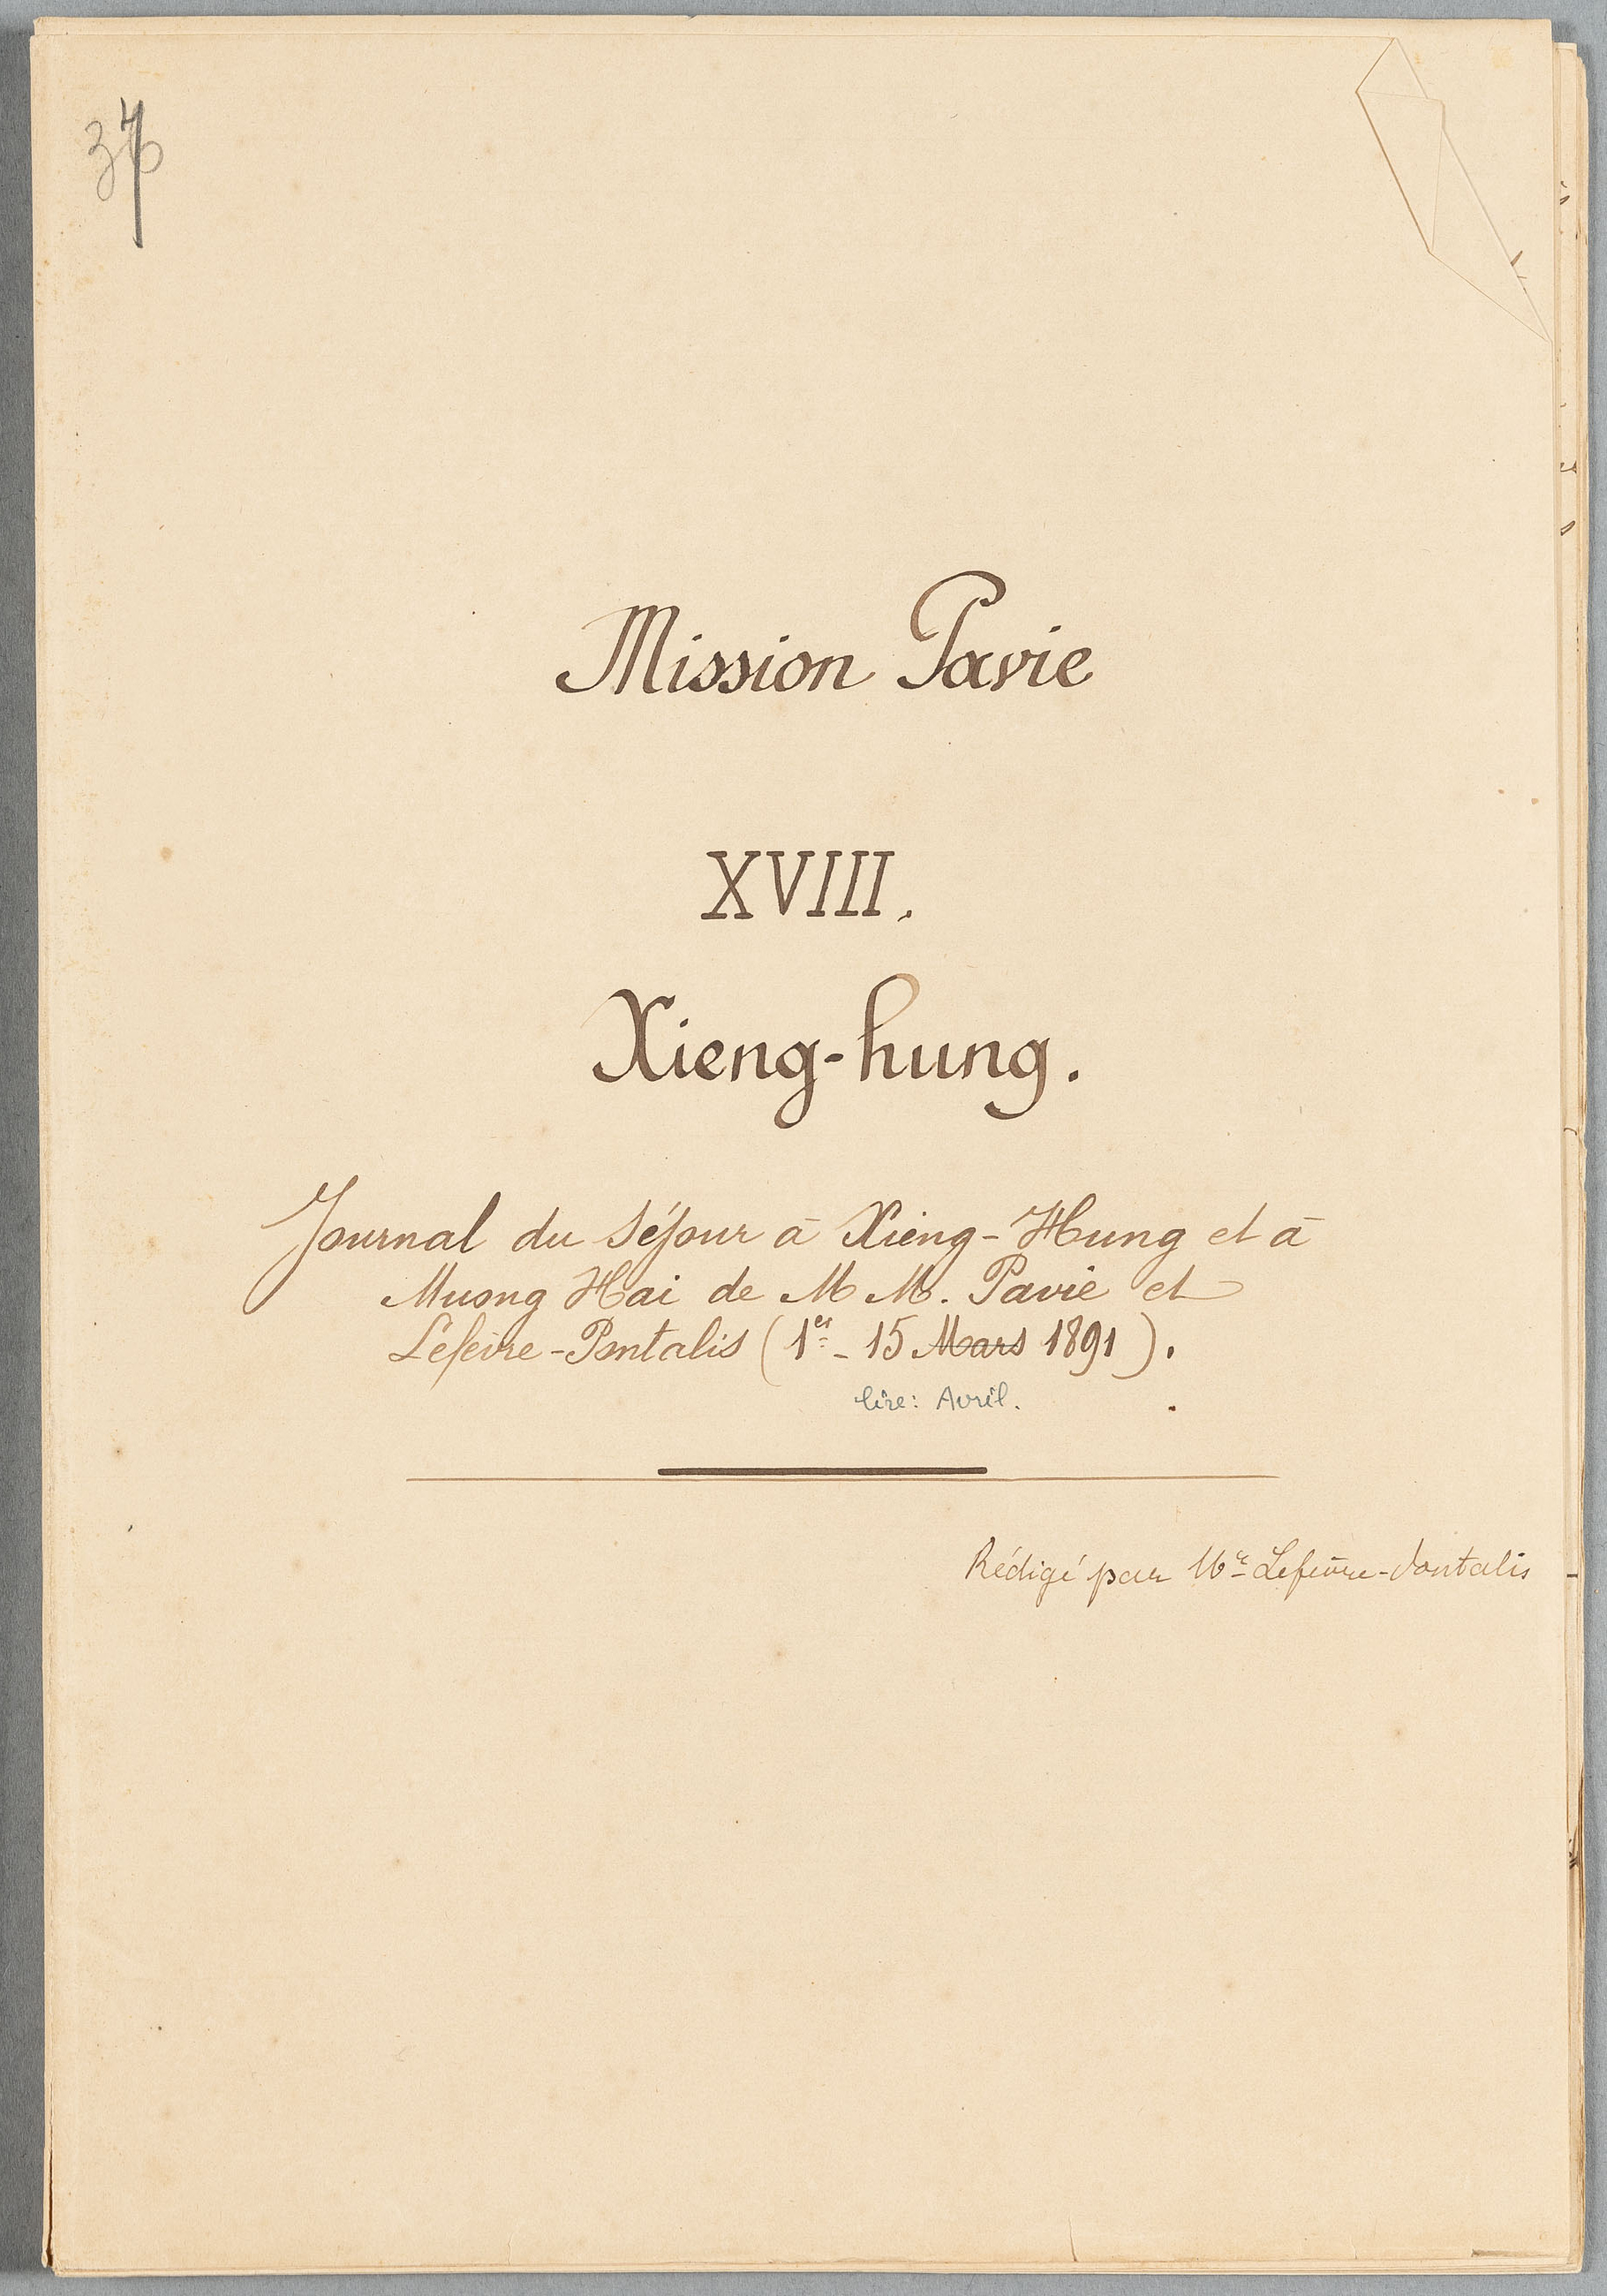 Mission Pavie – Journal de séjour de MM Pavie et Lefèvre-Pontalis à Xieng-Hung et Muong Hai - Exploration des Sip Song Panna, 1er-15 avril 1891 (GGI 14388)